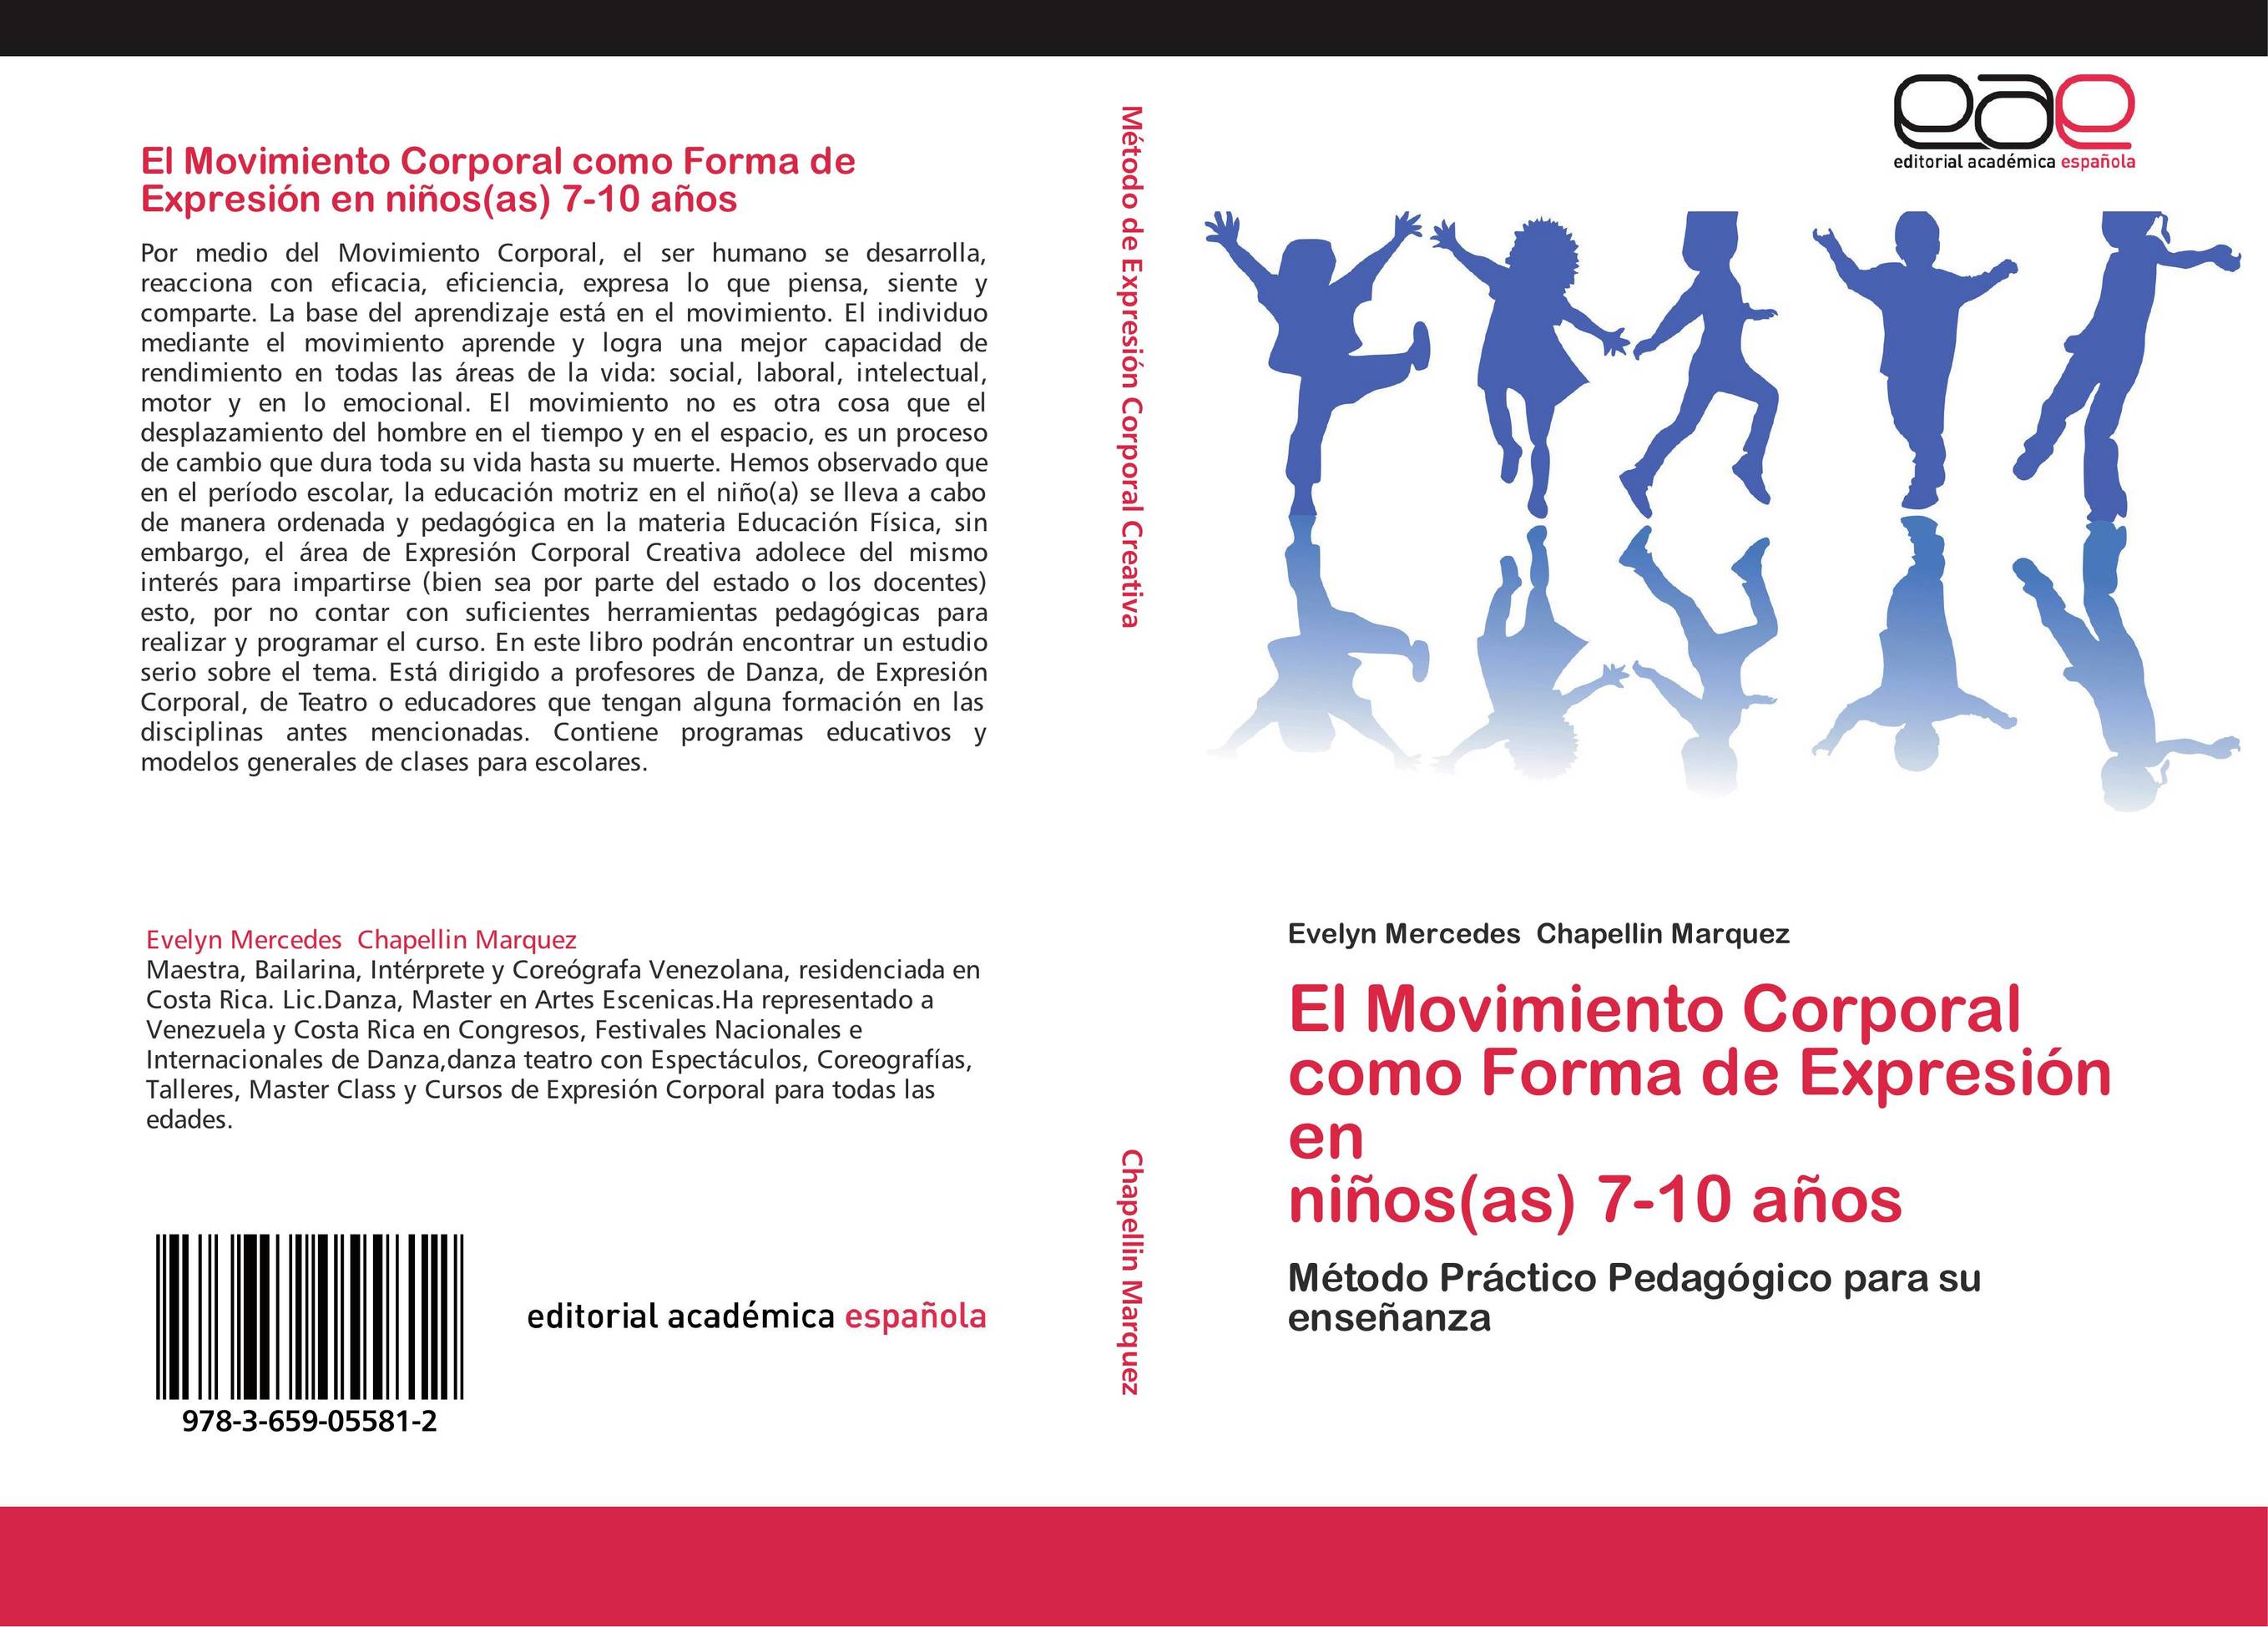 El Movimiento Corporal como Forma de Expresión en  niños(as) 7-10 años